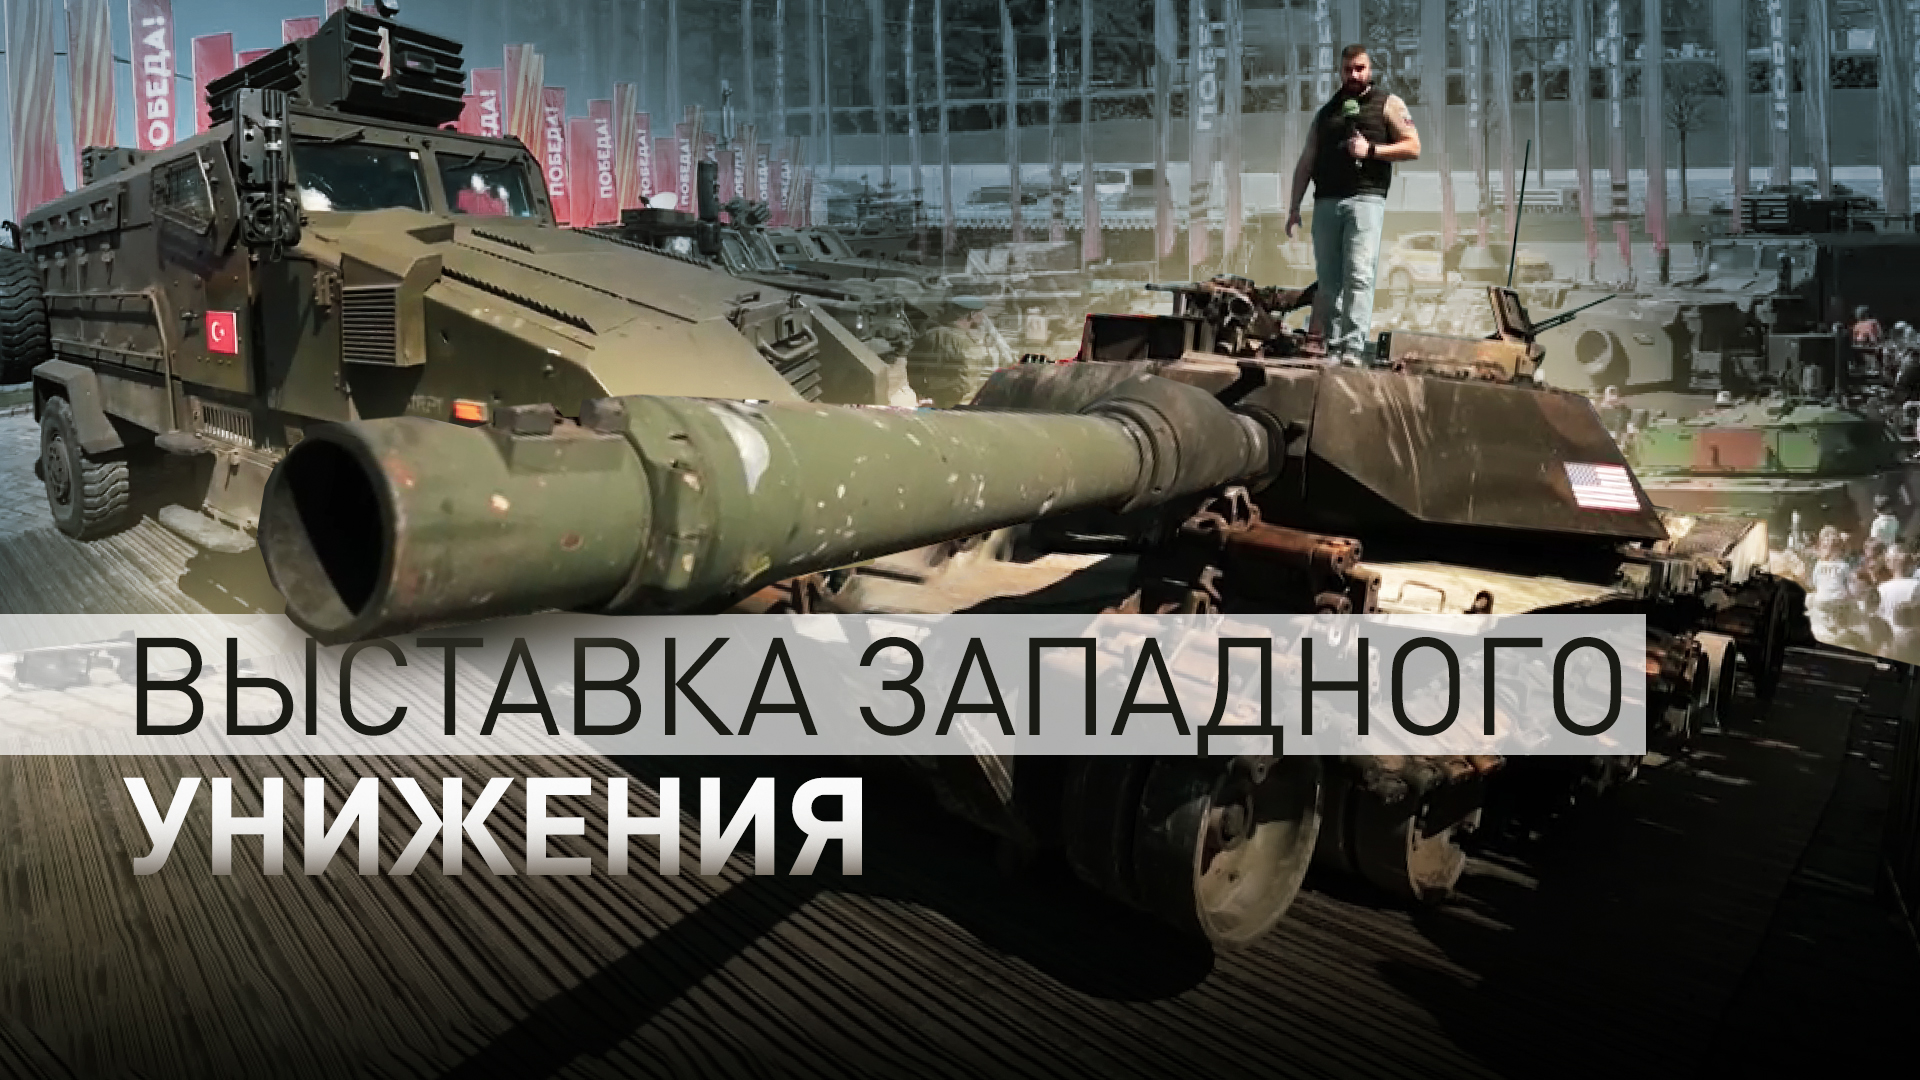 «Эта техника кланяется российскому народу»: посетители — о выставке трофейного вооружения в Москве